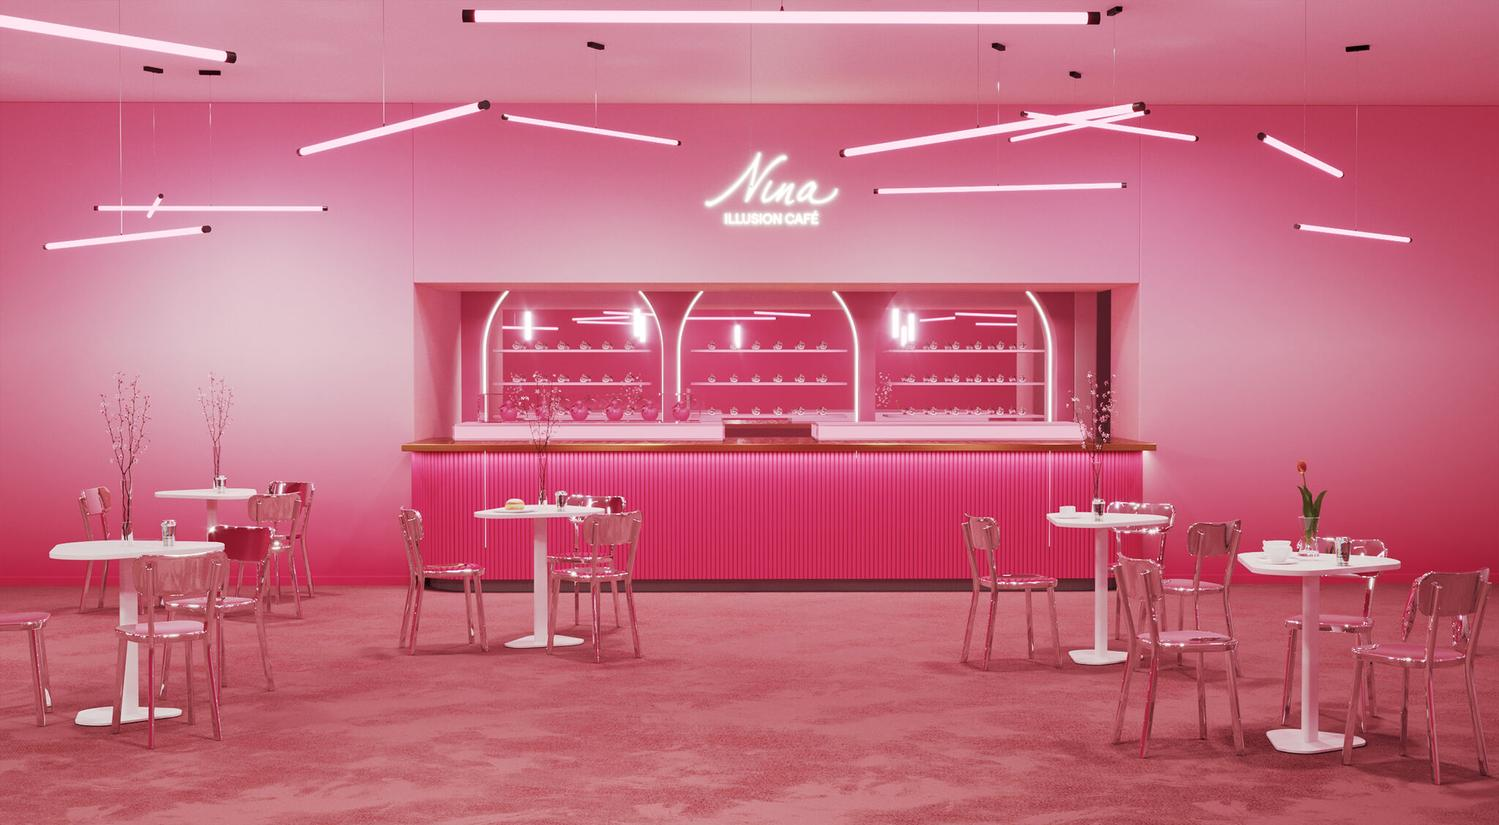 Nina Ricci ouvre un nouveau café inspiré de son parfum